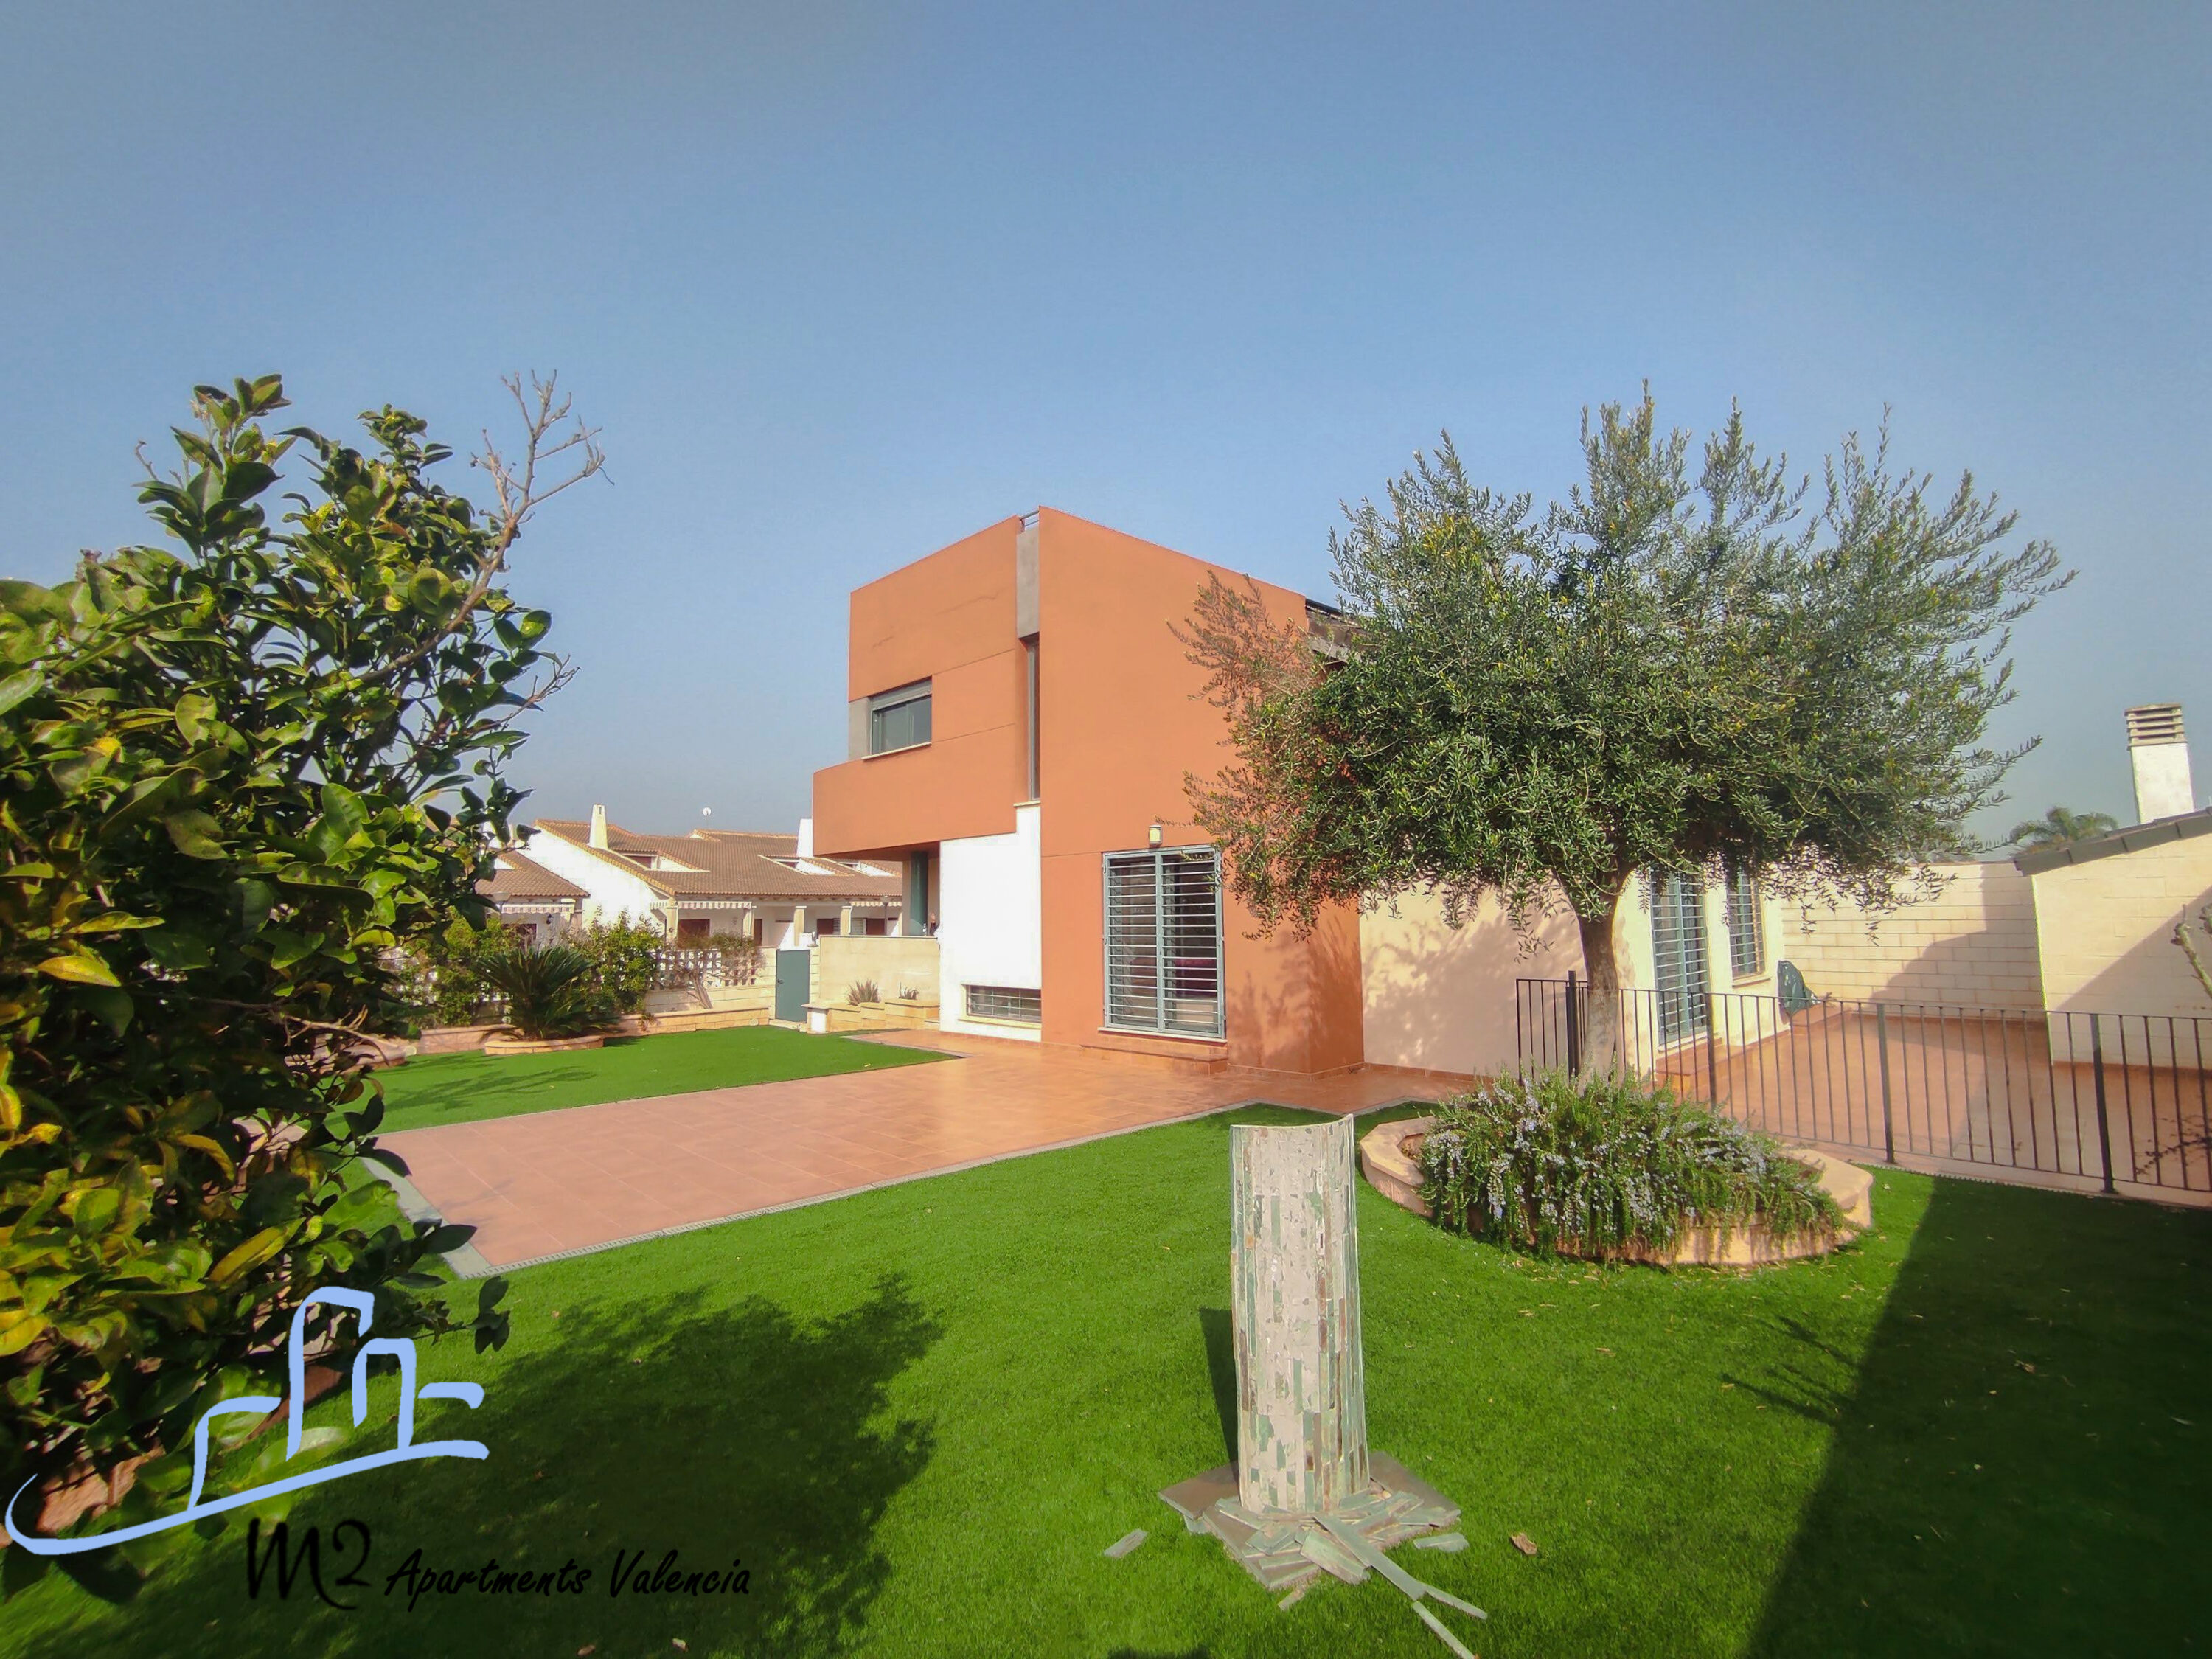 Villa for sale in Almardà (Sagunto) – Ref. 001428